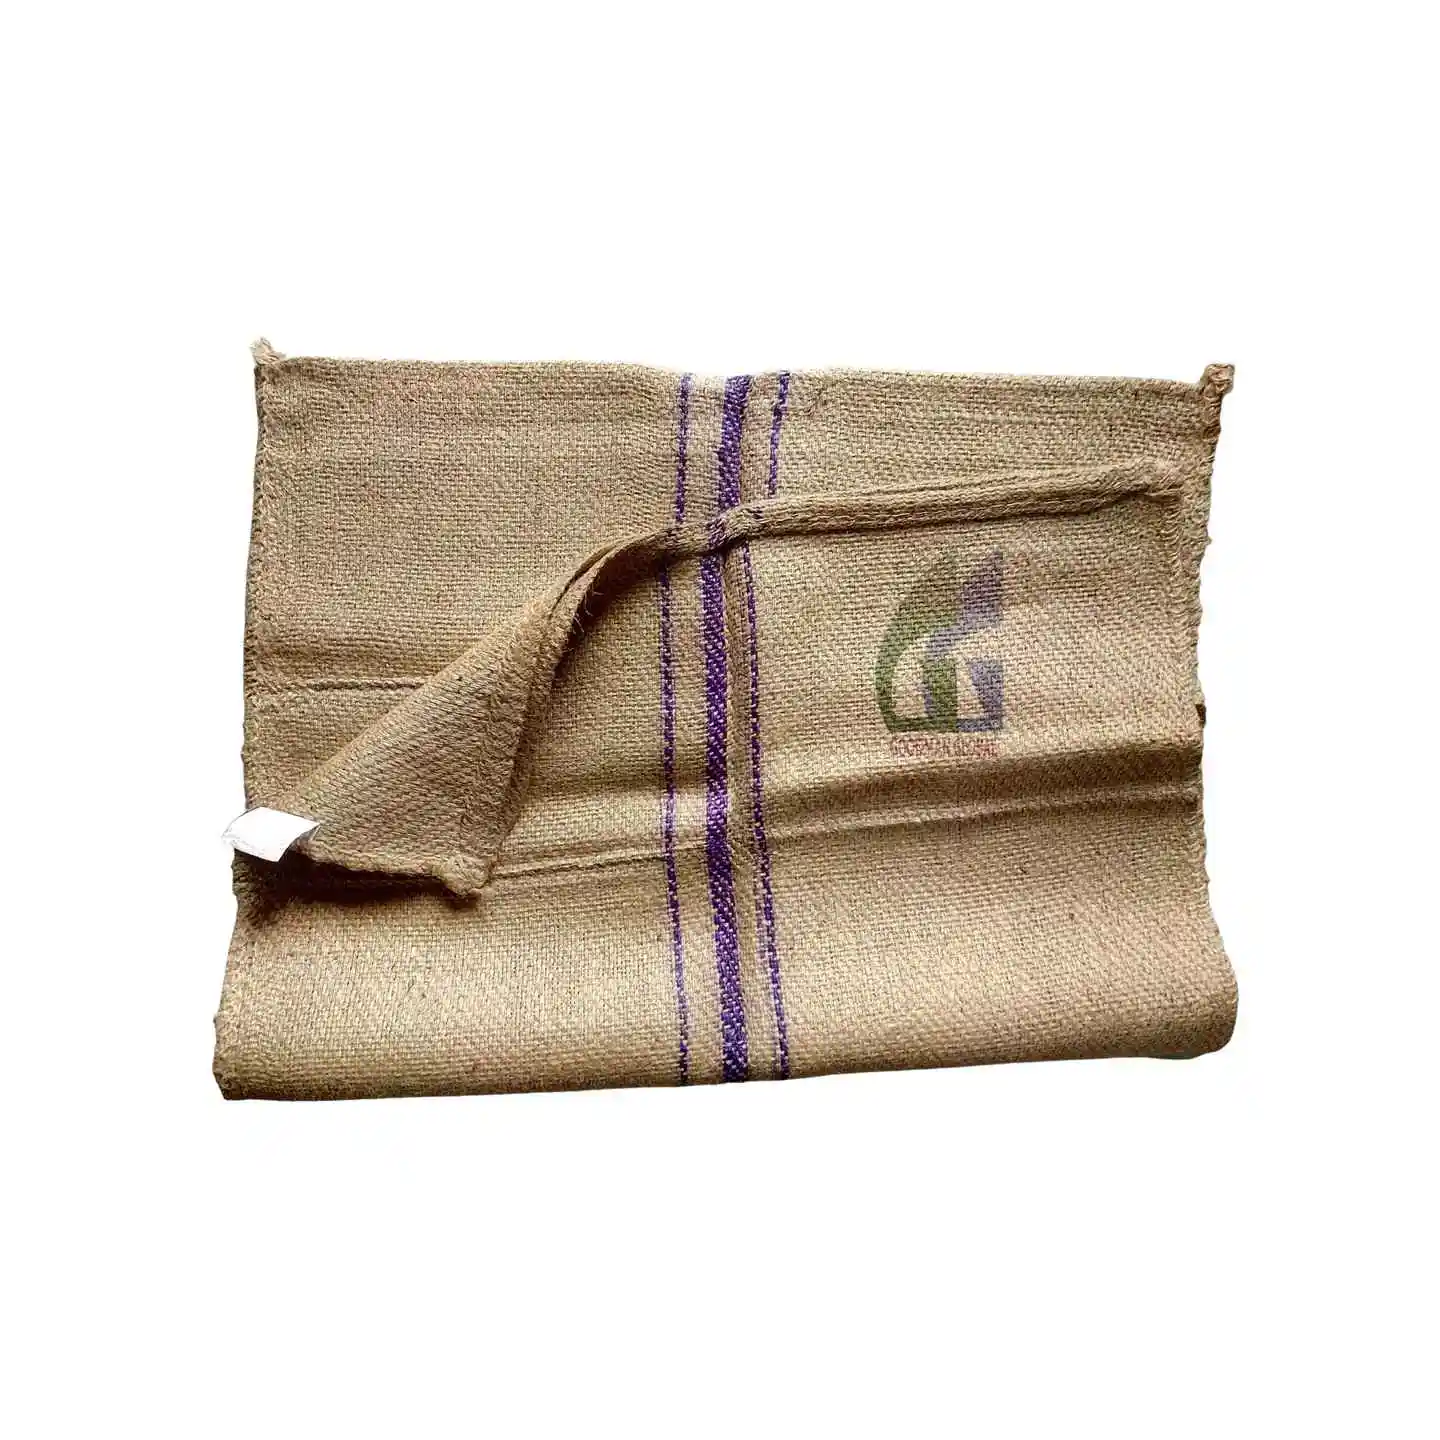 حقيبة جوت 38x26.5 بوصة للكاجو والكاكاو والقهوة 788 جم من الجلد الصحي حقيبة من الجلد الخشن حقائب فارغة من جوني للبيع بالجملة من Goodman Global Bangladesh